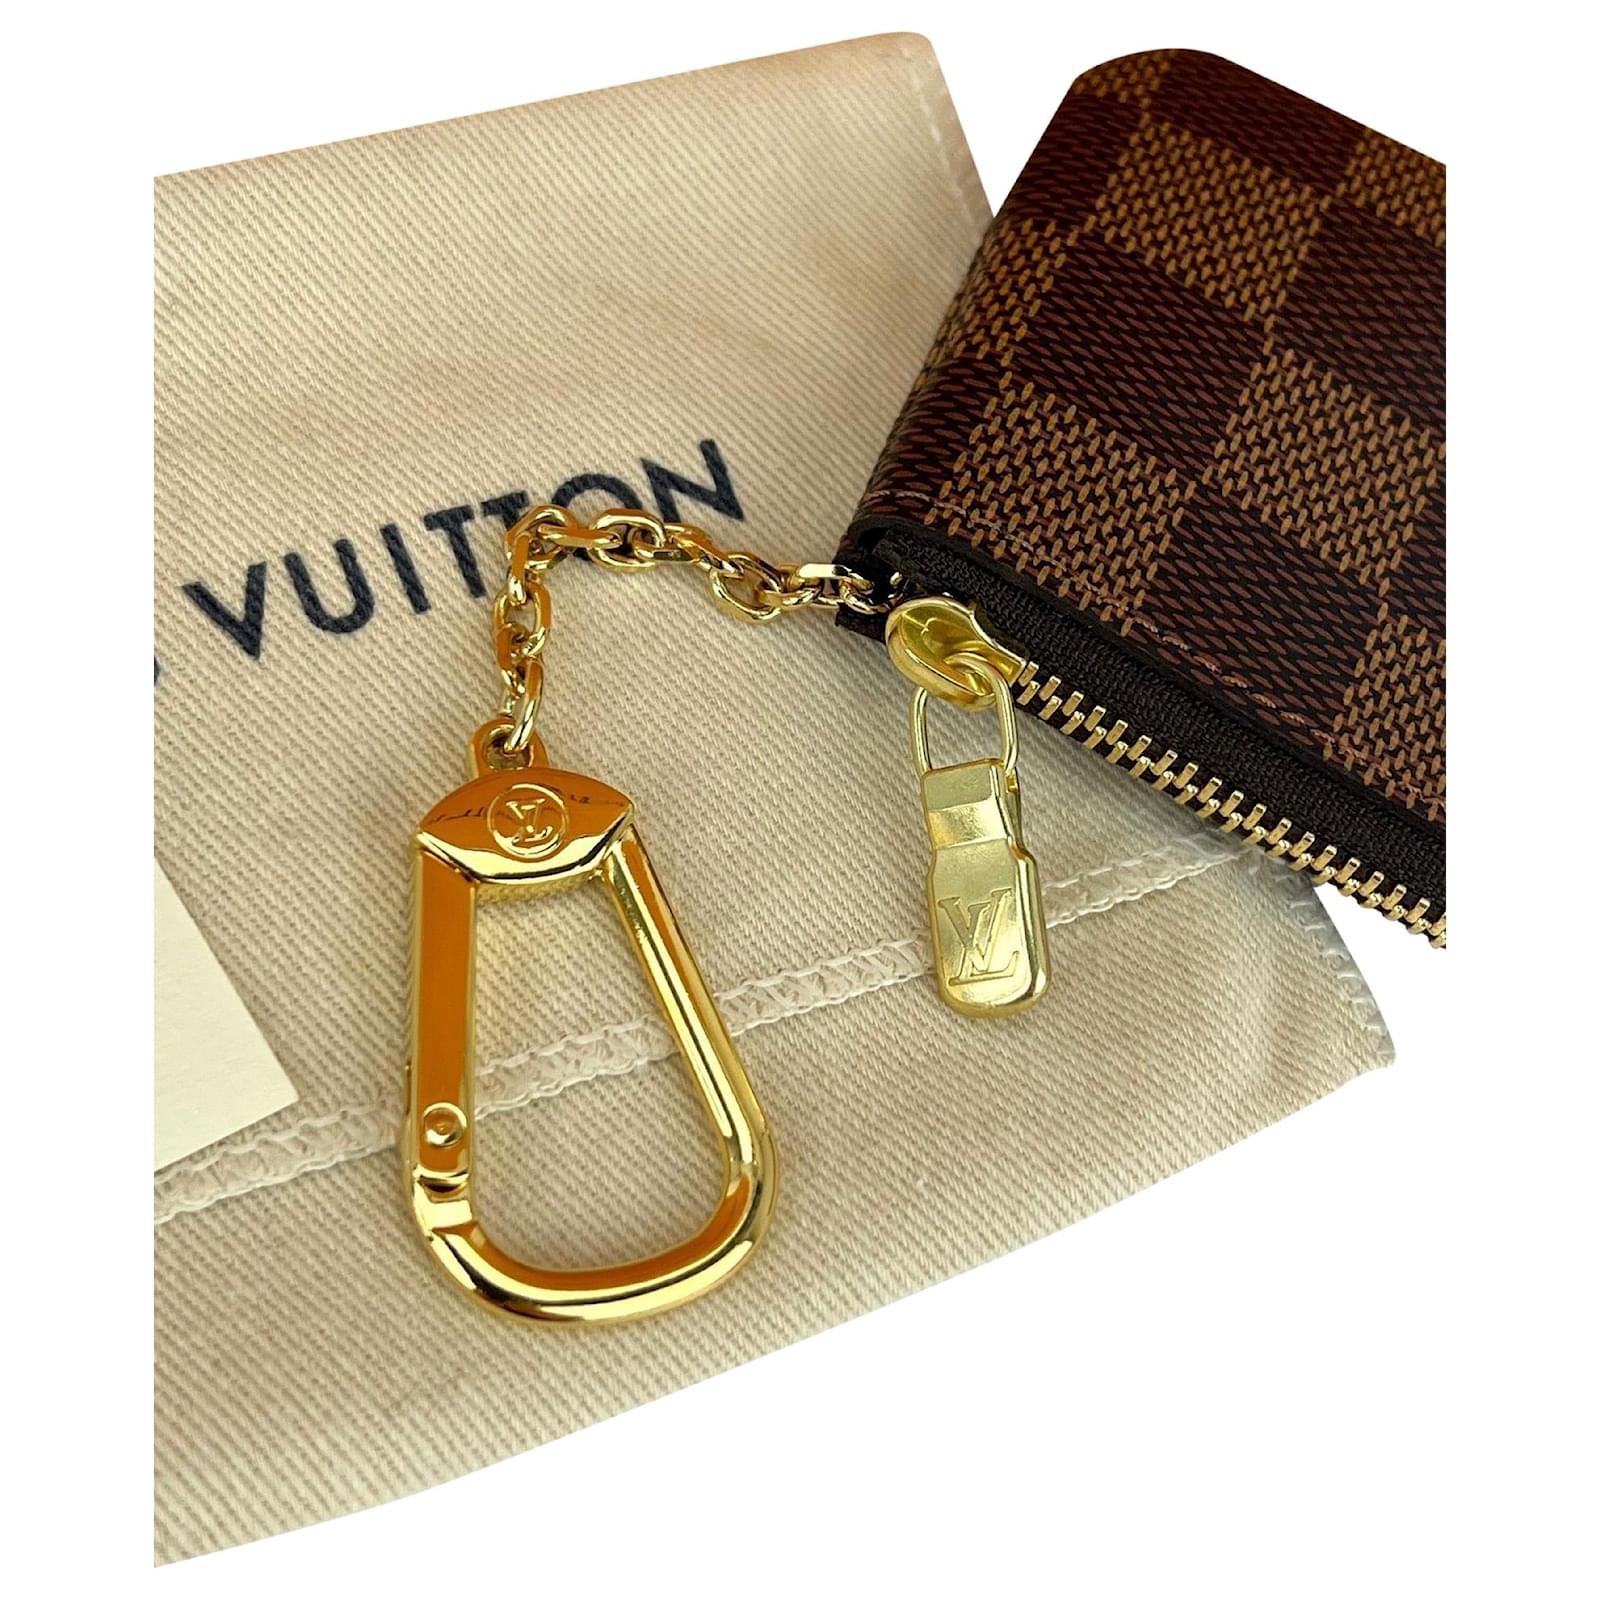 Louis Vuitton Damier Ebene Key Pouch – SFN